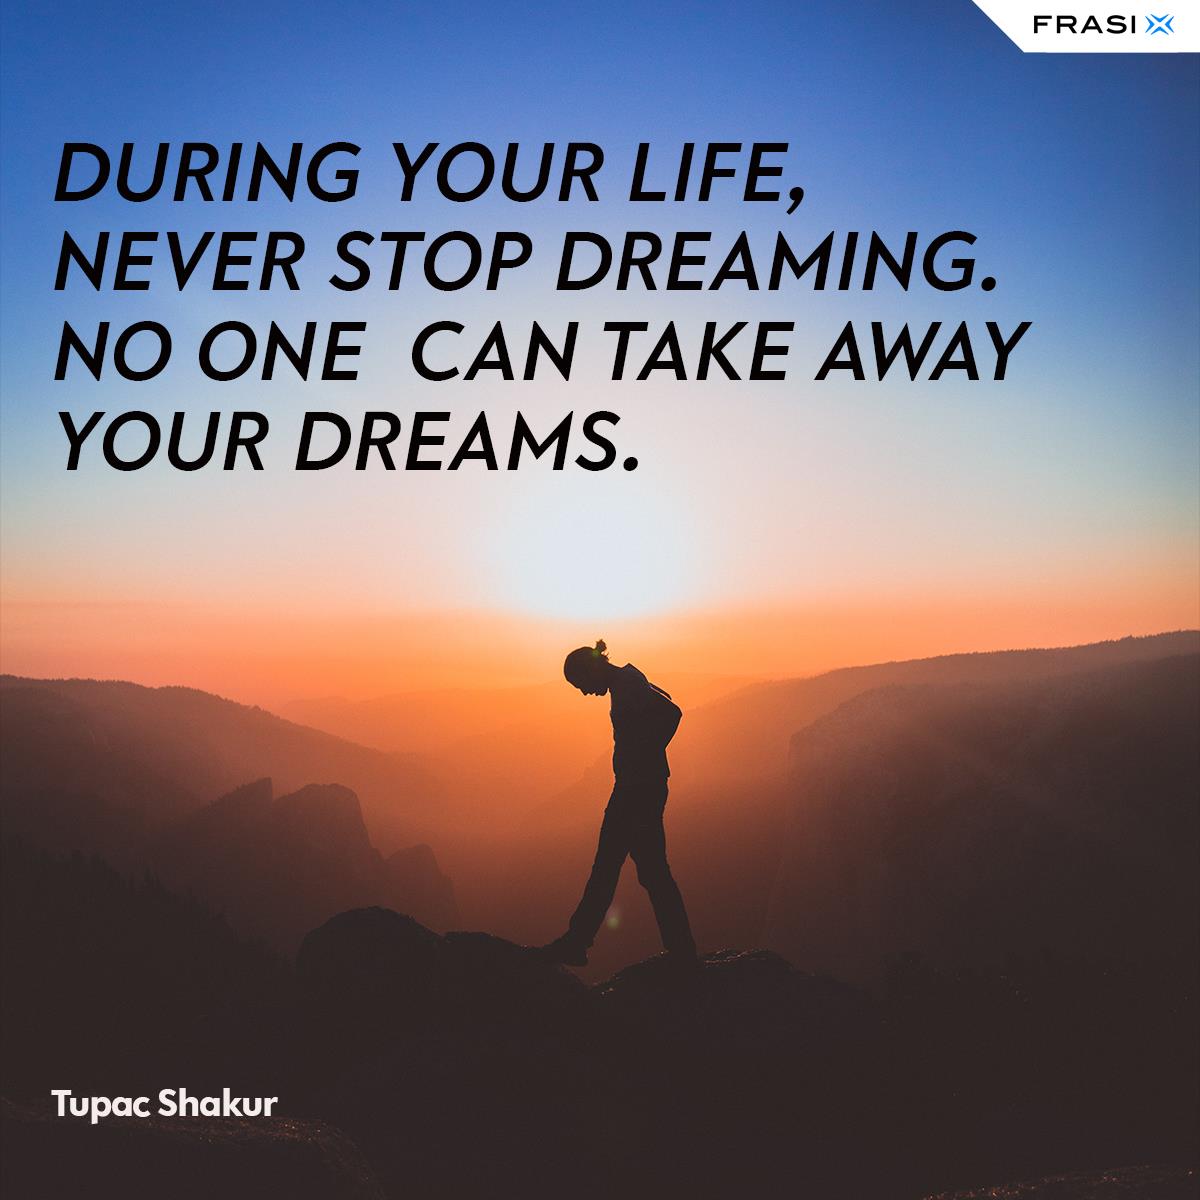 Frasi sogni in inglese Never stop dreaming Tupac